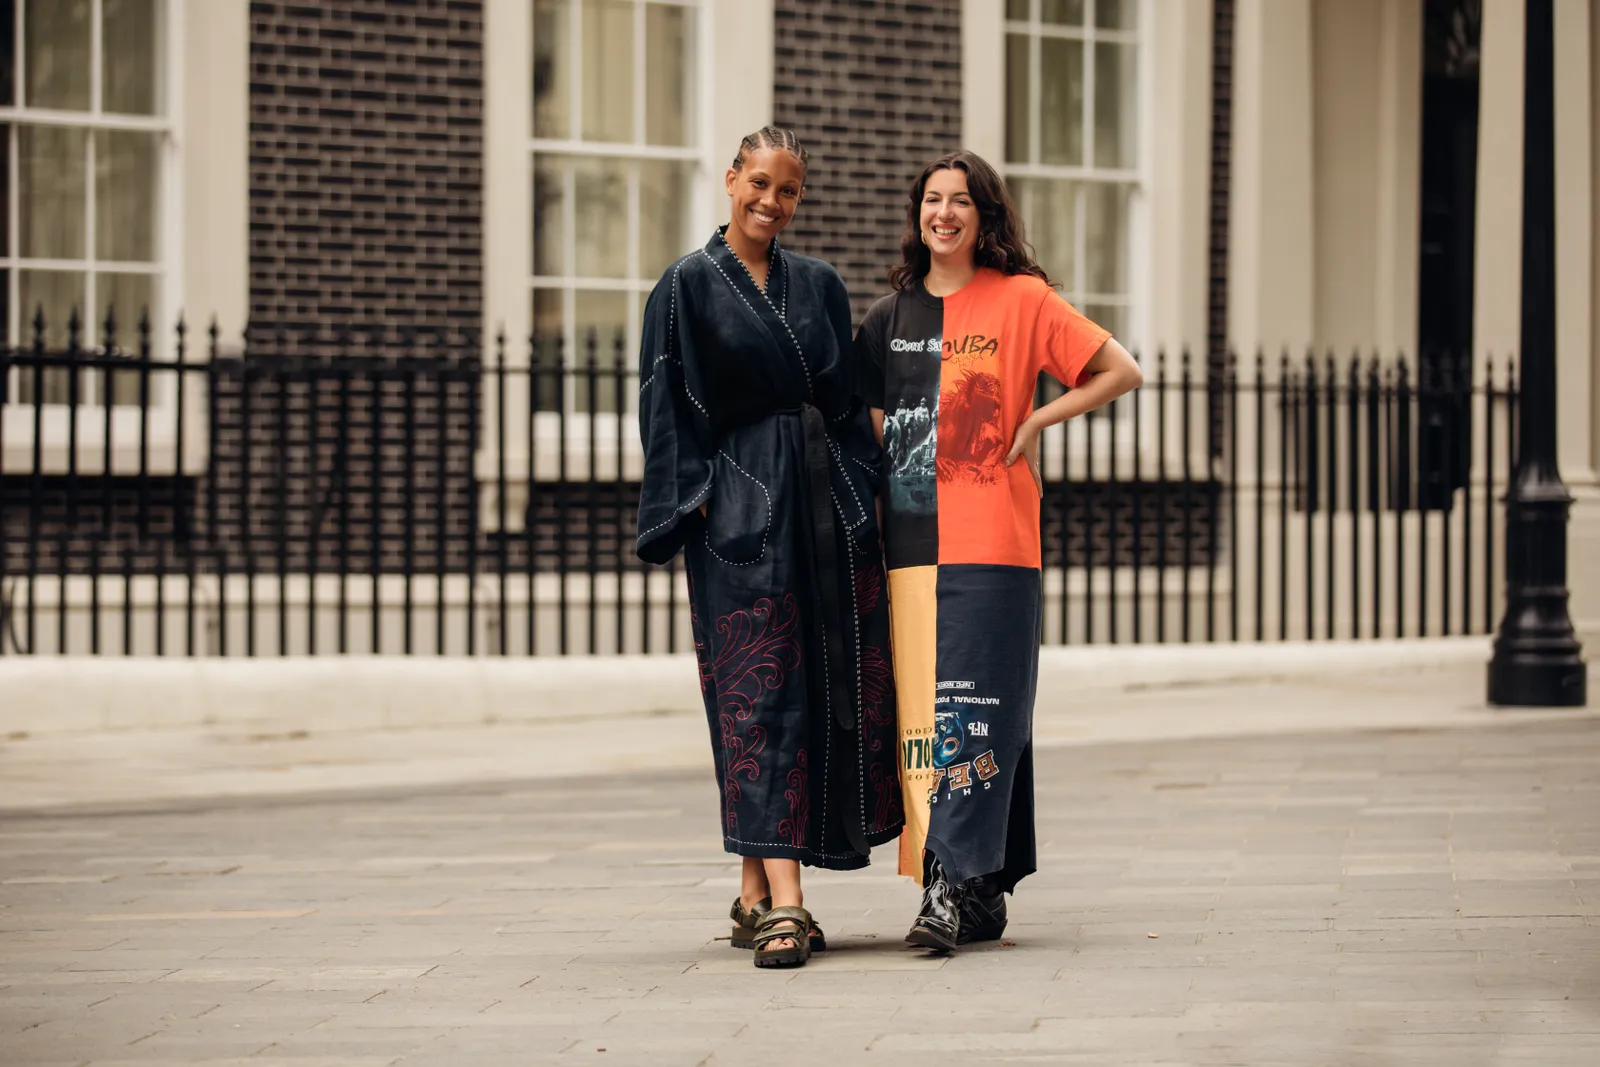 Asystentka działu mody Vogue UK Honey Sweet Elias i redaktorka Jess Gerardi /(Fot. Jonathan Daniel Pryce)